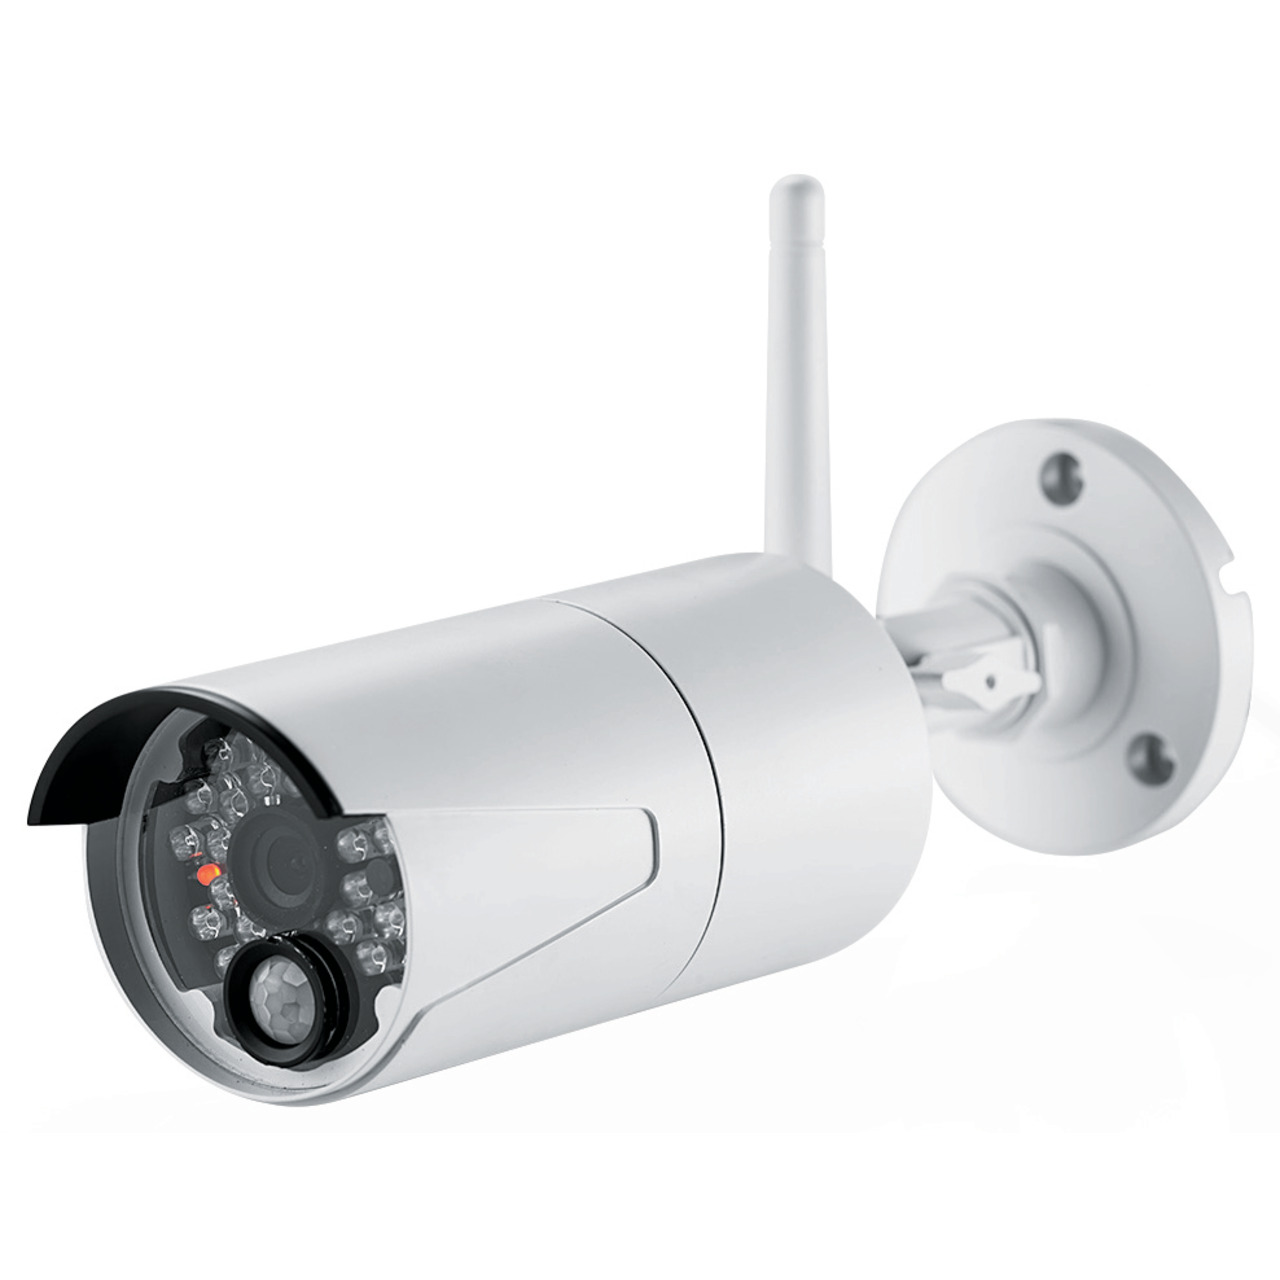 ELV Funk-Zusatzkamera zur Erweiterung der Kamerasysteme KS100 HD - KS200 HD- 2-4 GHz- HD (720p) unter Sicherheitstechnik